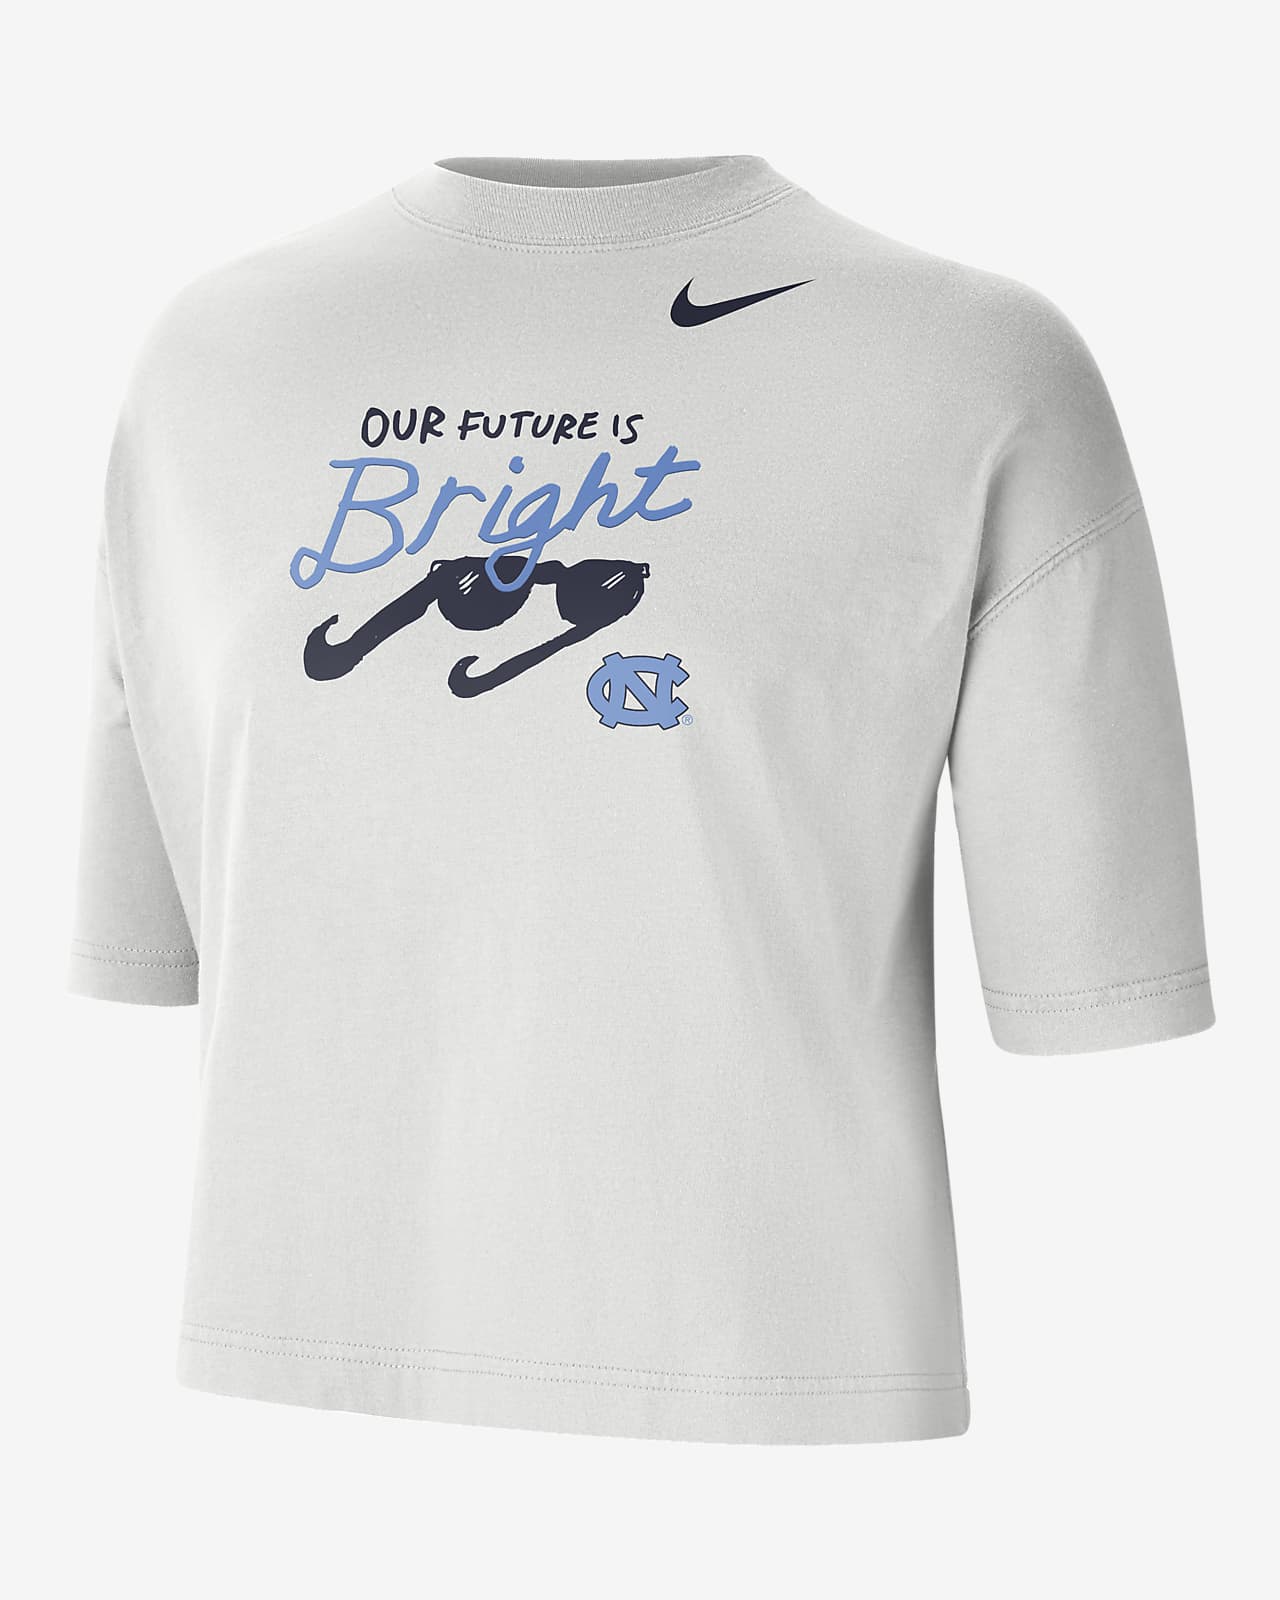 UNC Women's Nike College T-Shirt